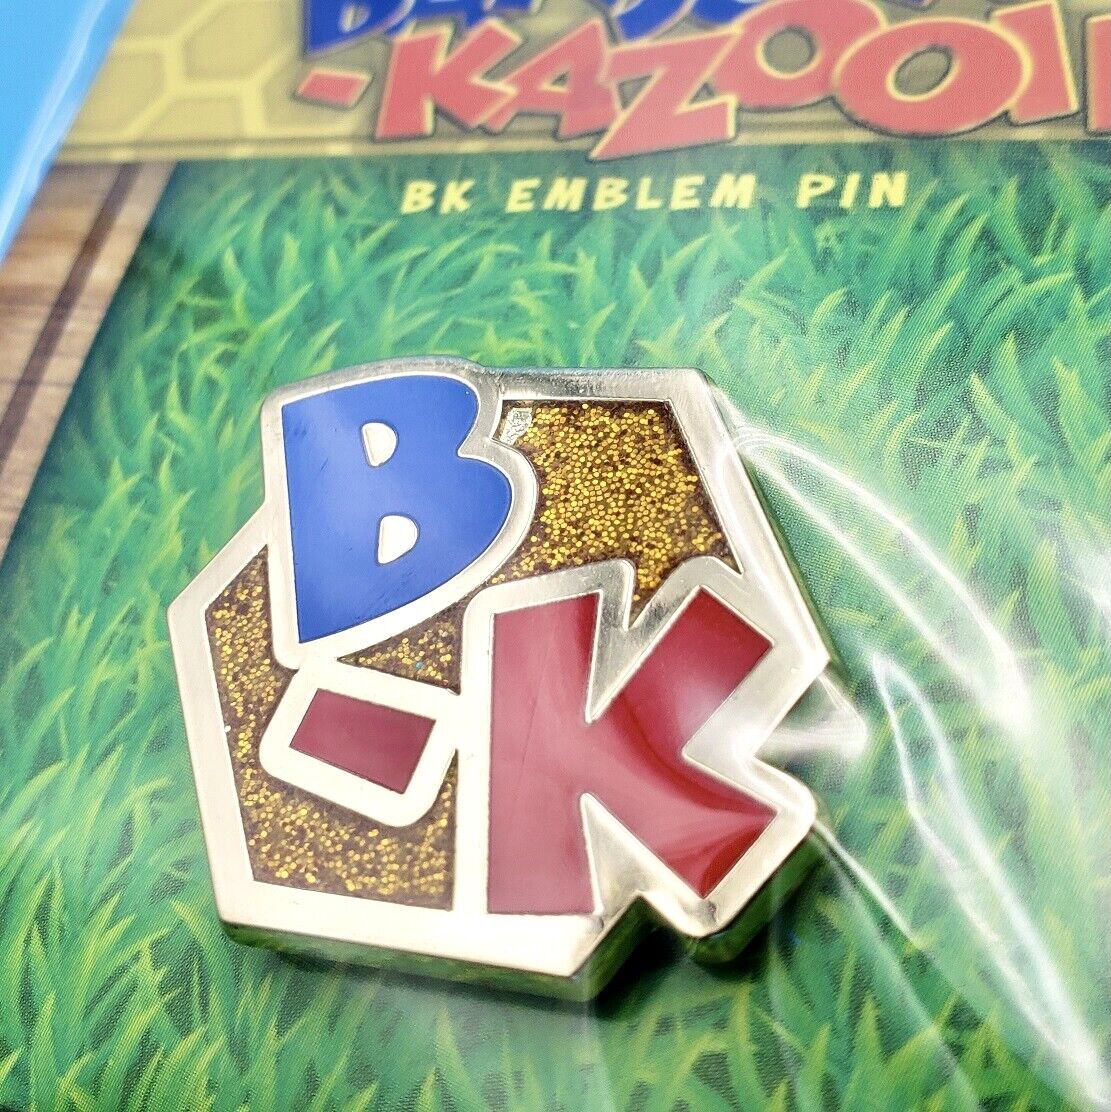 Banjo-Kazooie BK Emblem Pin Enamel Glitter Logo 1.1\